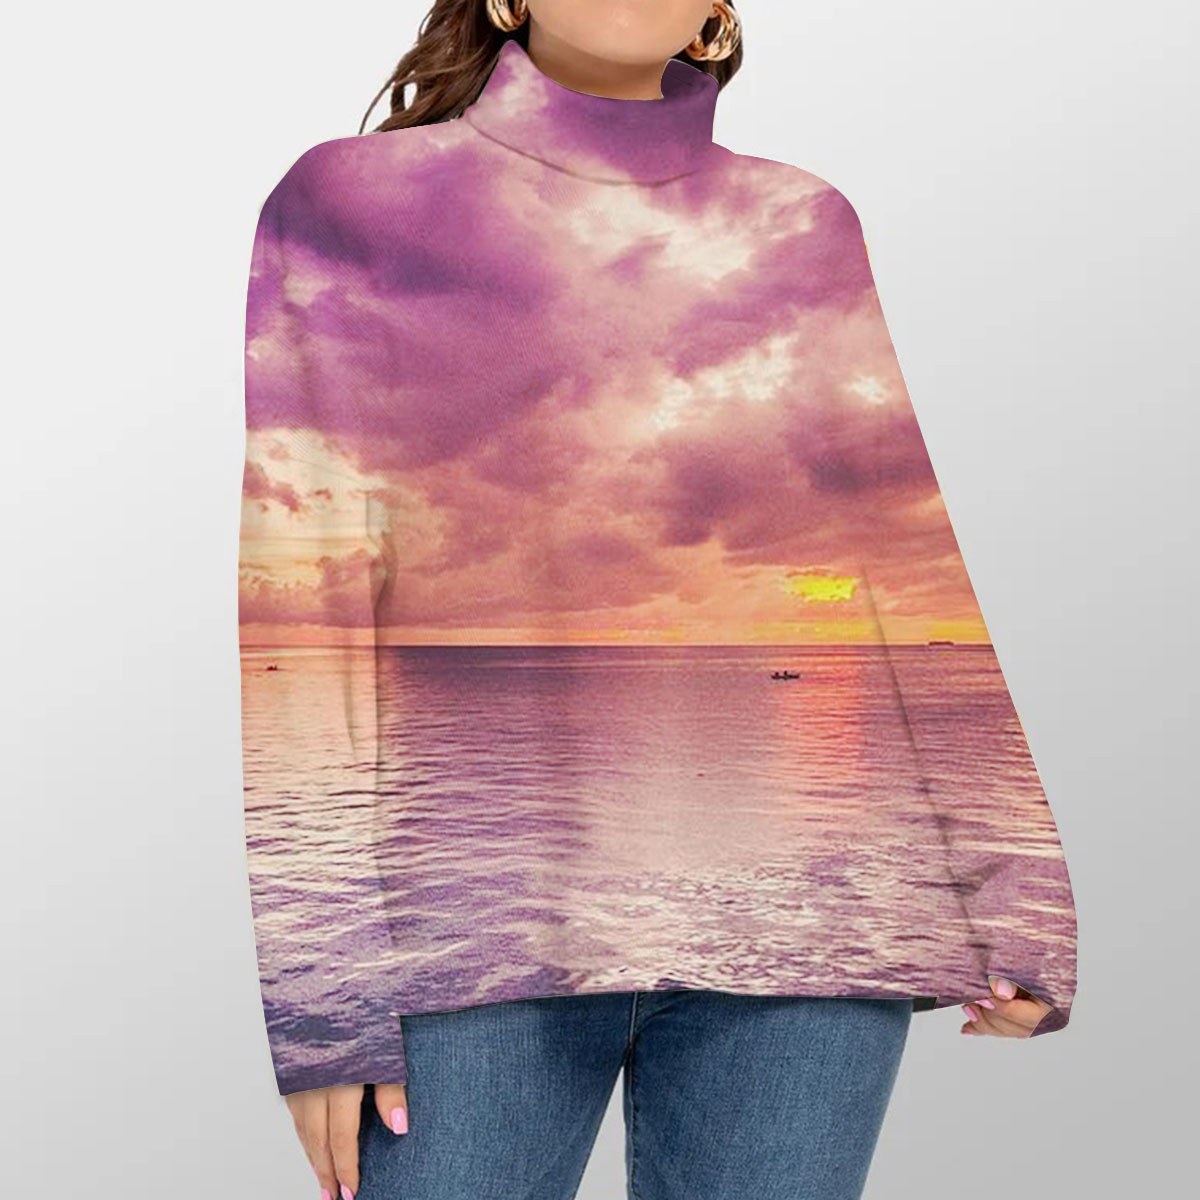 Sunset Sky Turtleneck Sweater_2_1